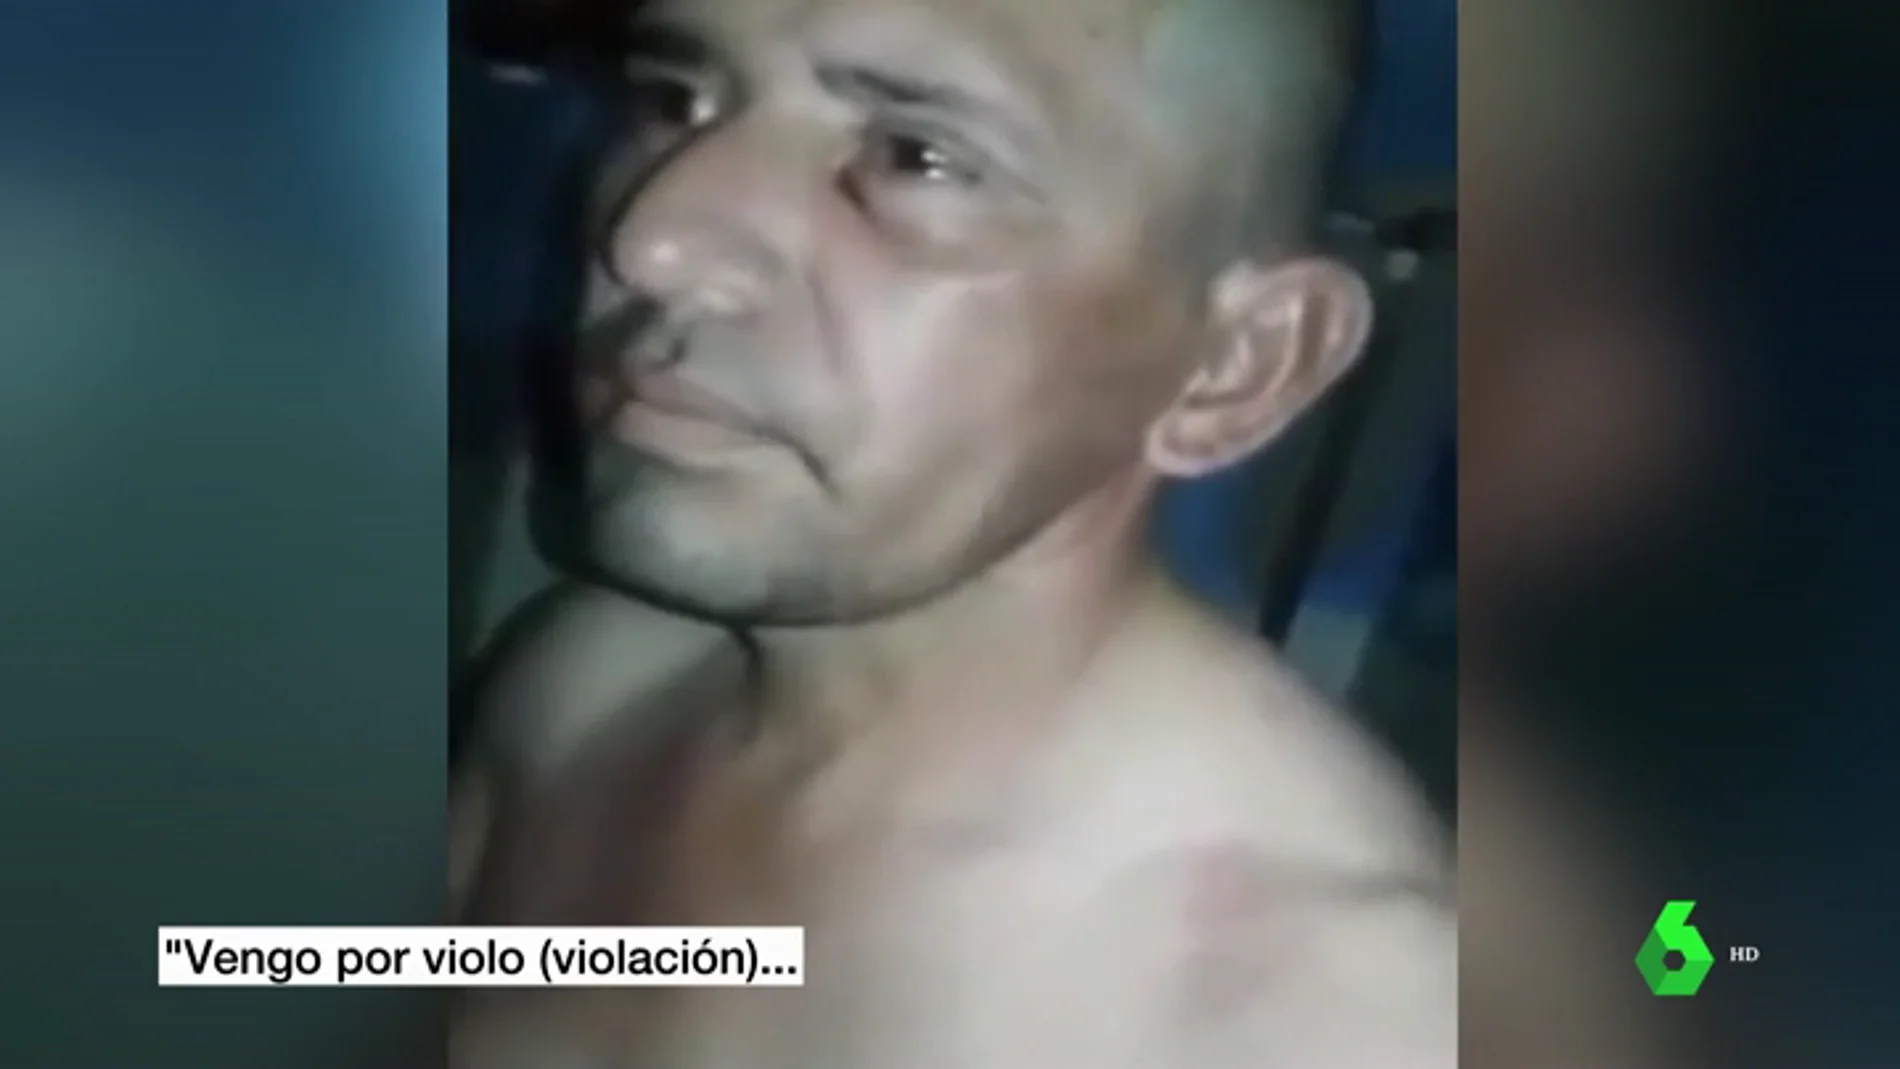 Fragmento del vídeo en el que el preso es golpeado y vejado